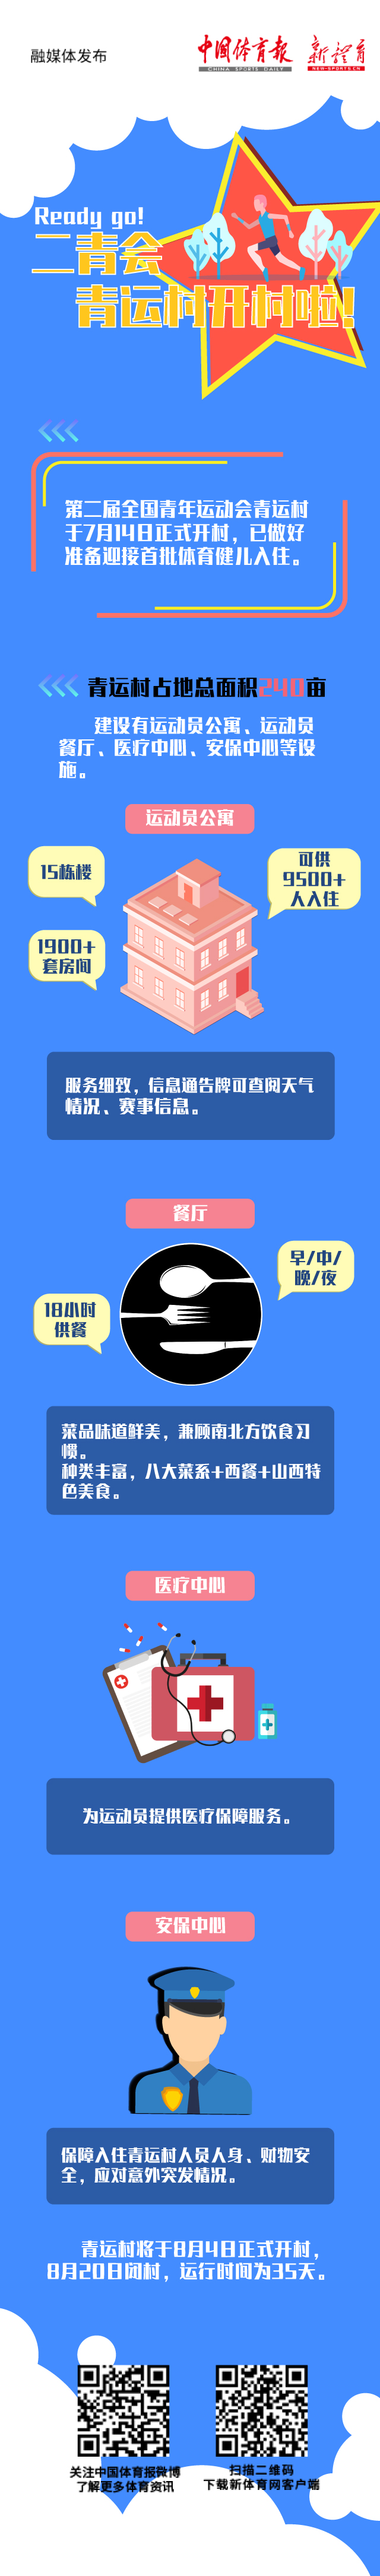 0716-青云村.jpg